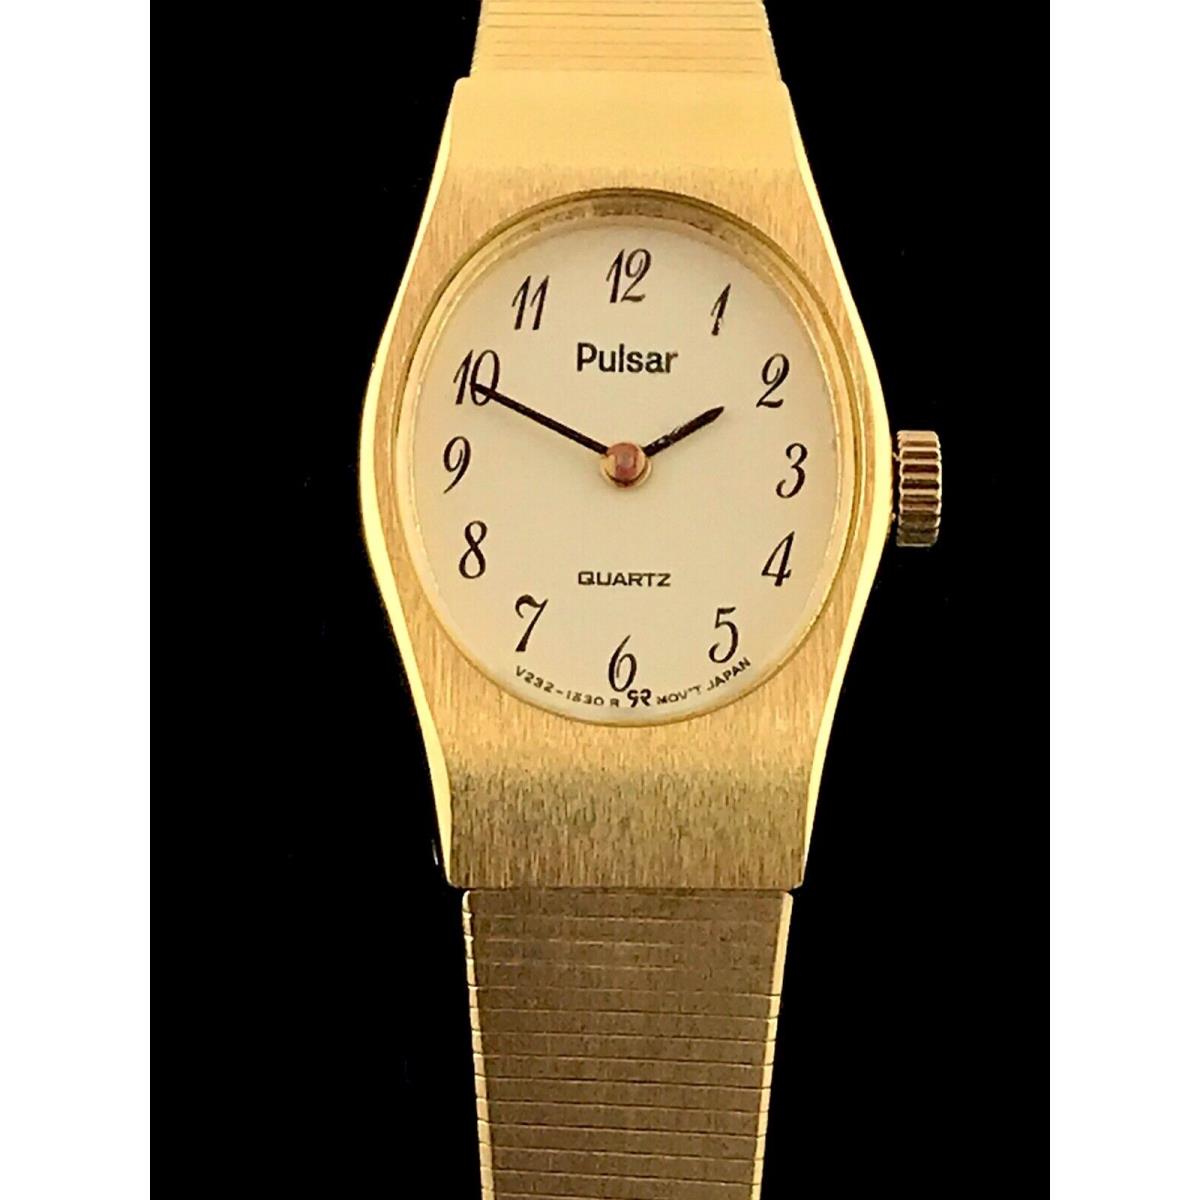 Pulsar v232 5960 Gold Tone Base Metal Bezel Stainless Steel Quartz Watch Vintage